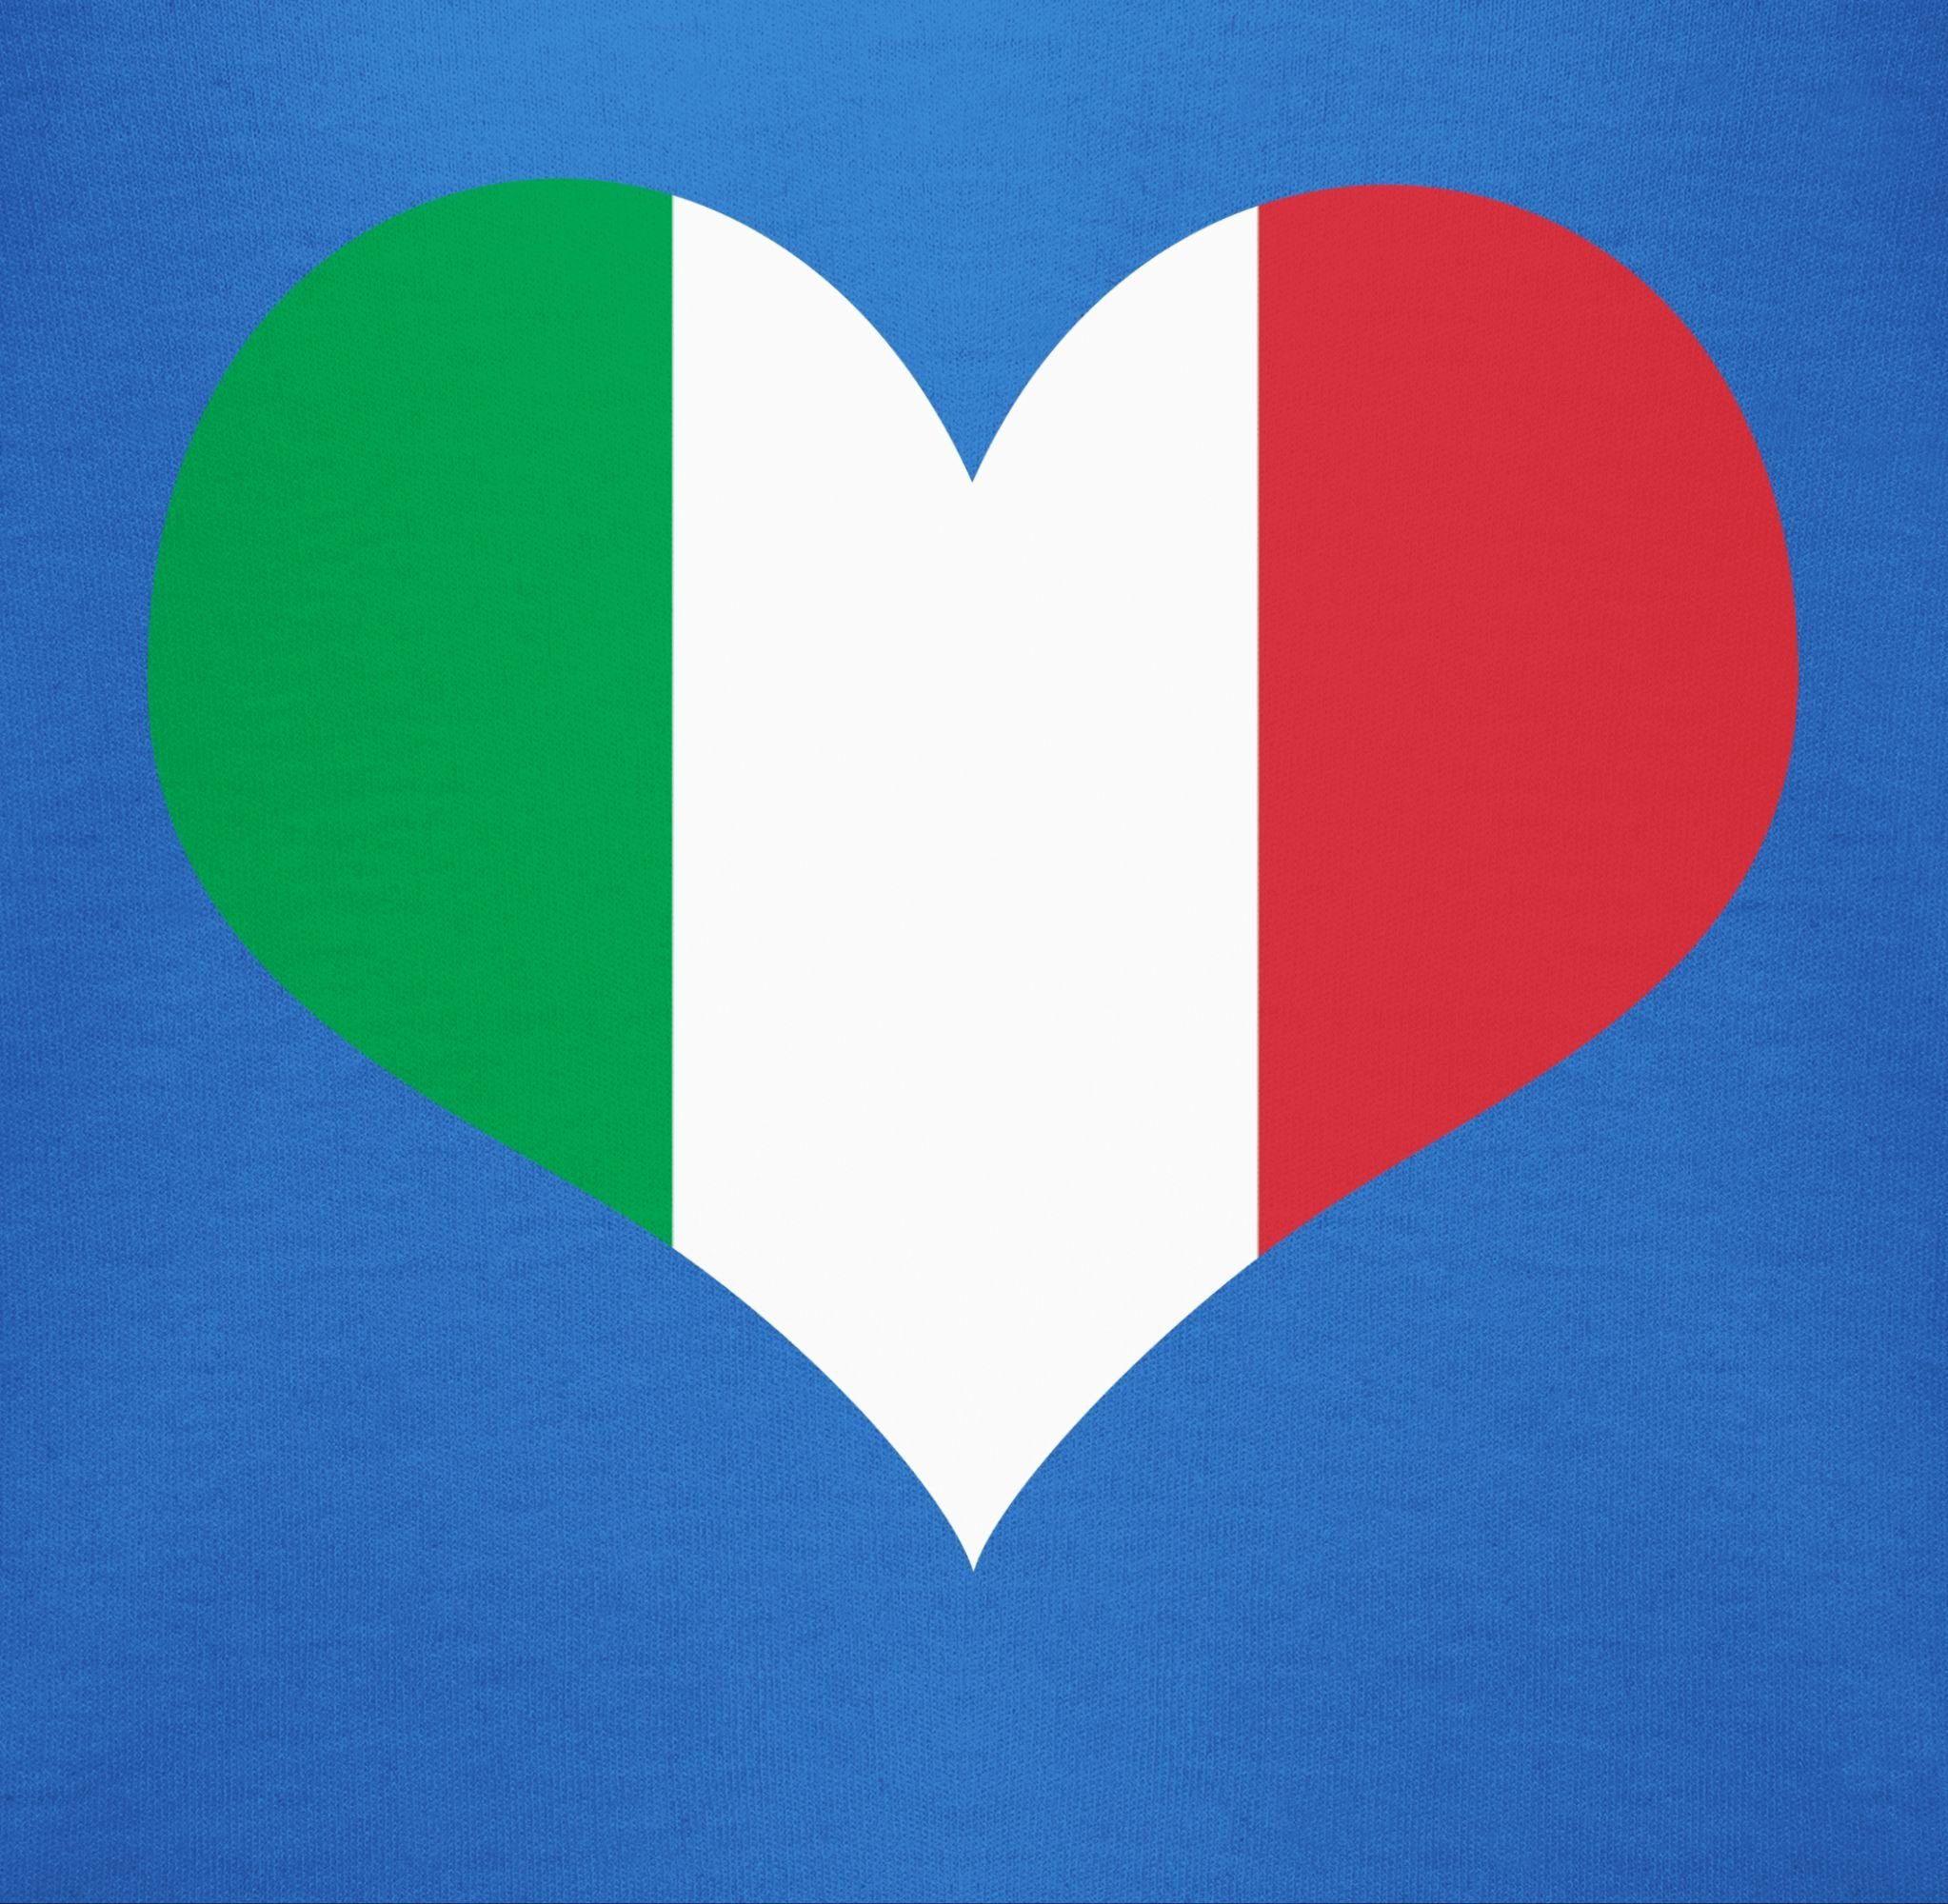 Herz Baby Länder Wappen Royalblau Shirtbody 1 Shirtracer Italien